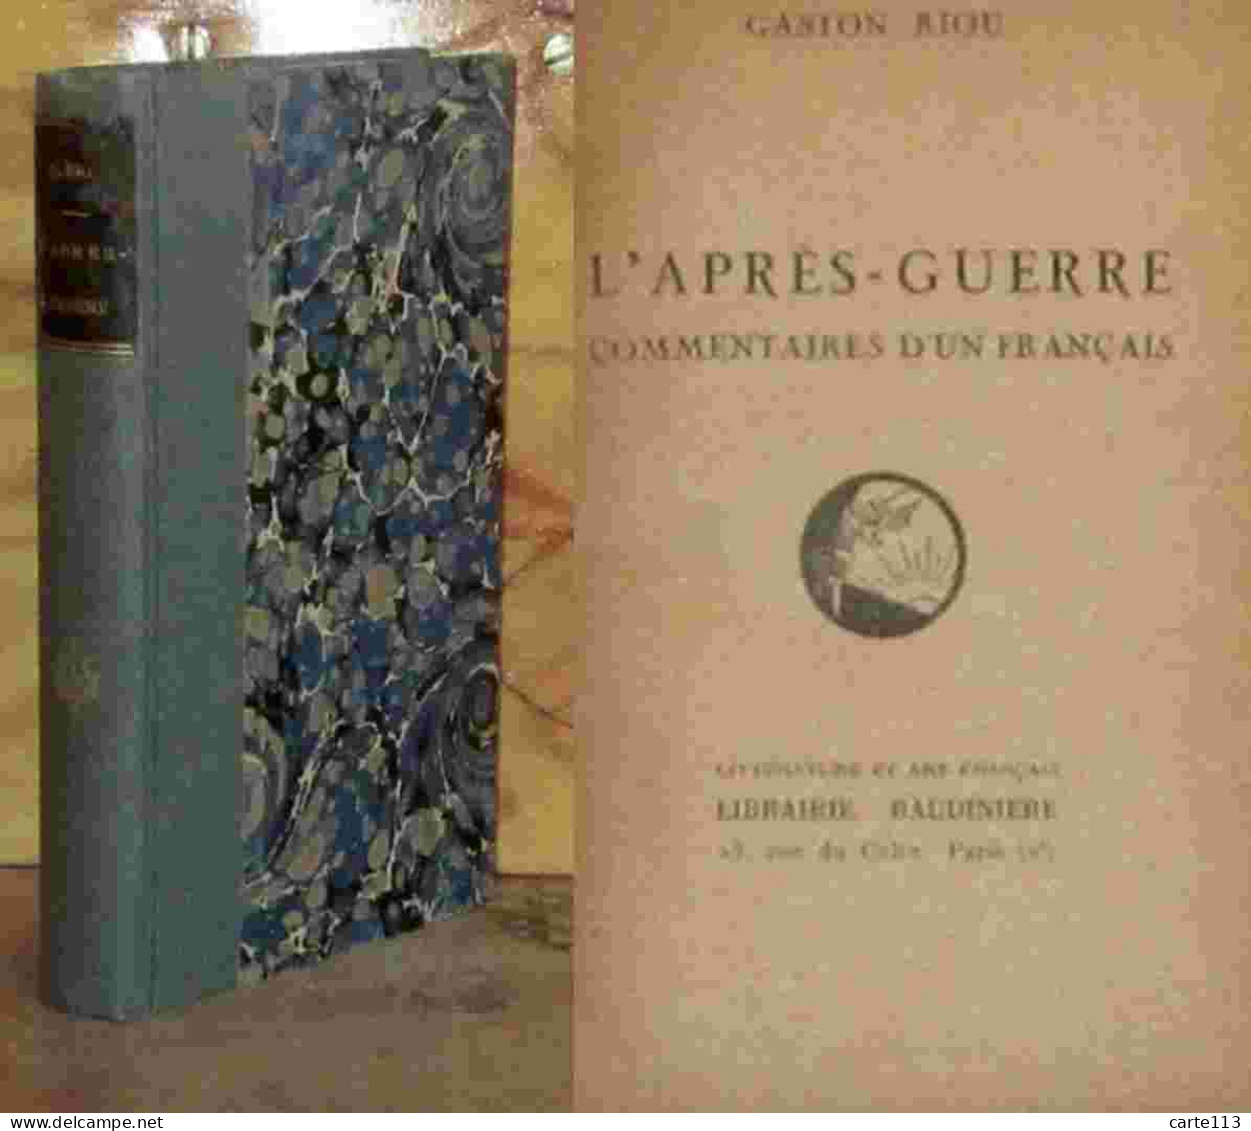 RIOU Gaston    - L'APRES-GUERRE - COMMENTAIRES D'UN FRANCAIS  - 1901-1940